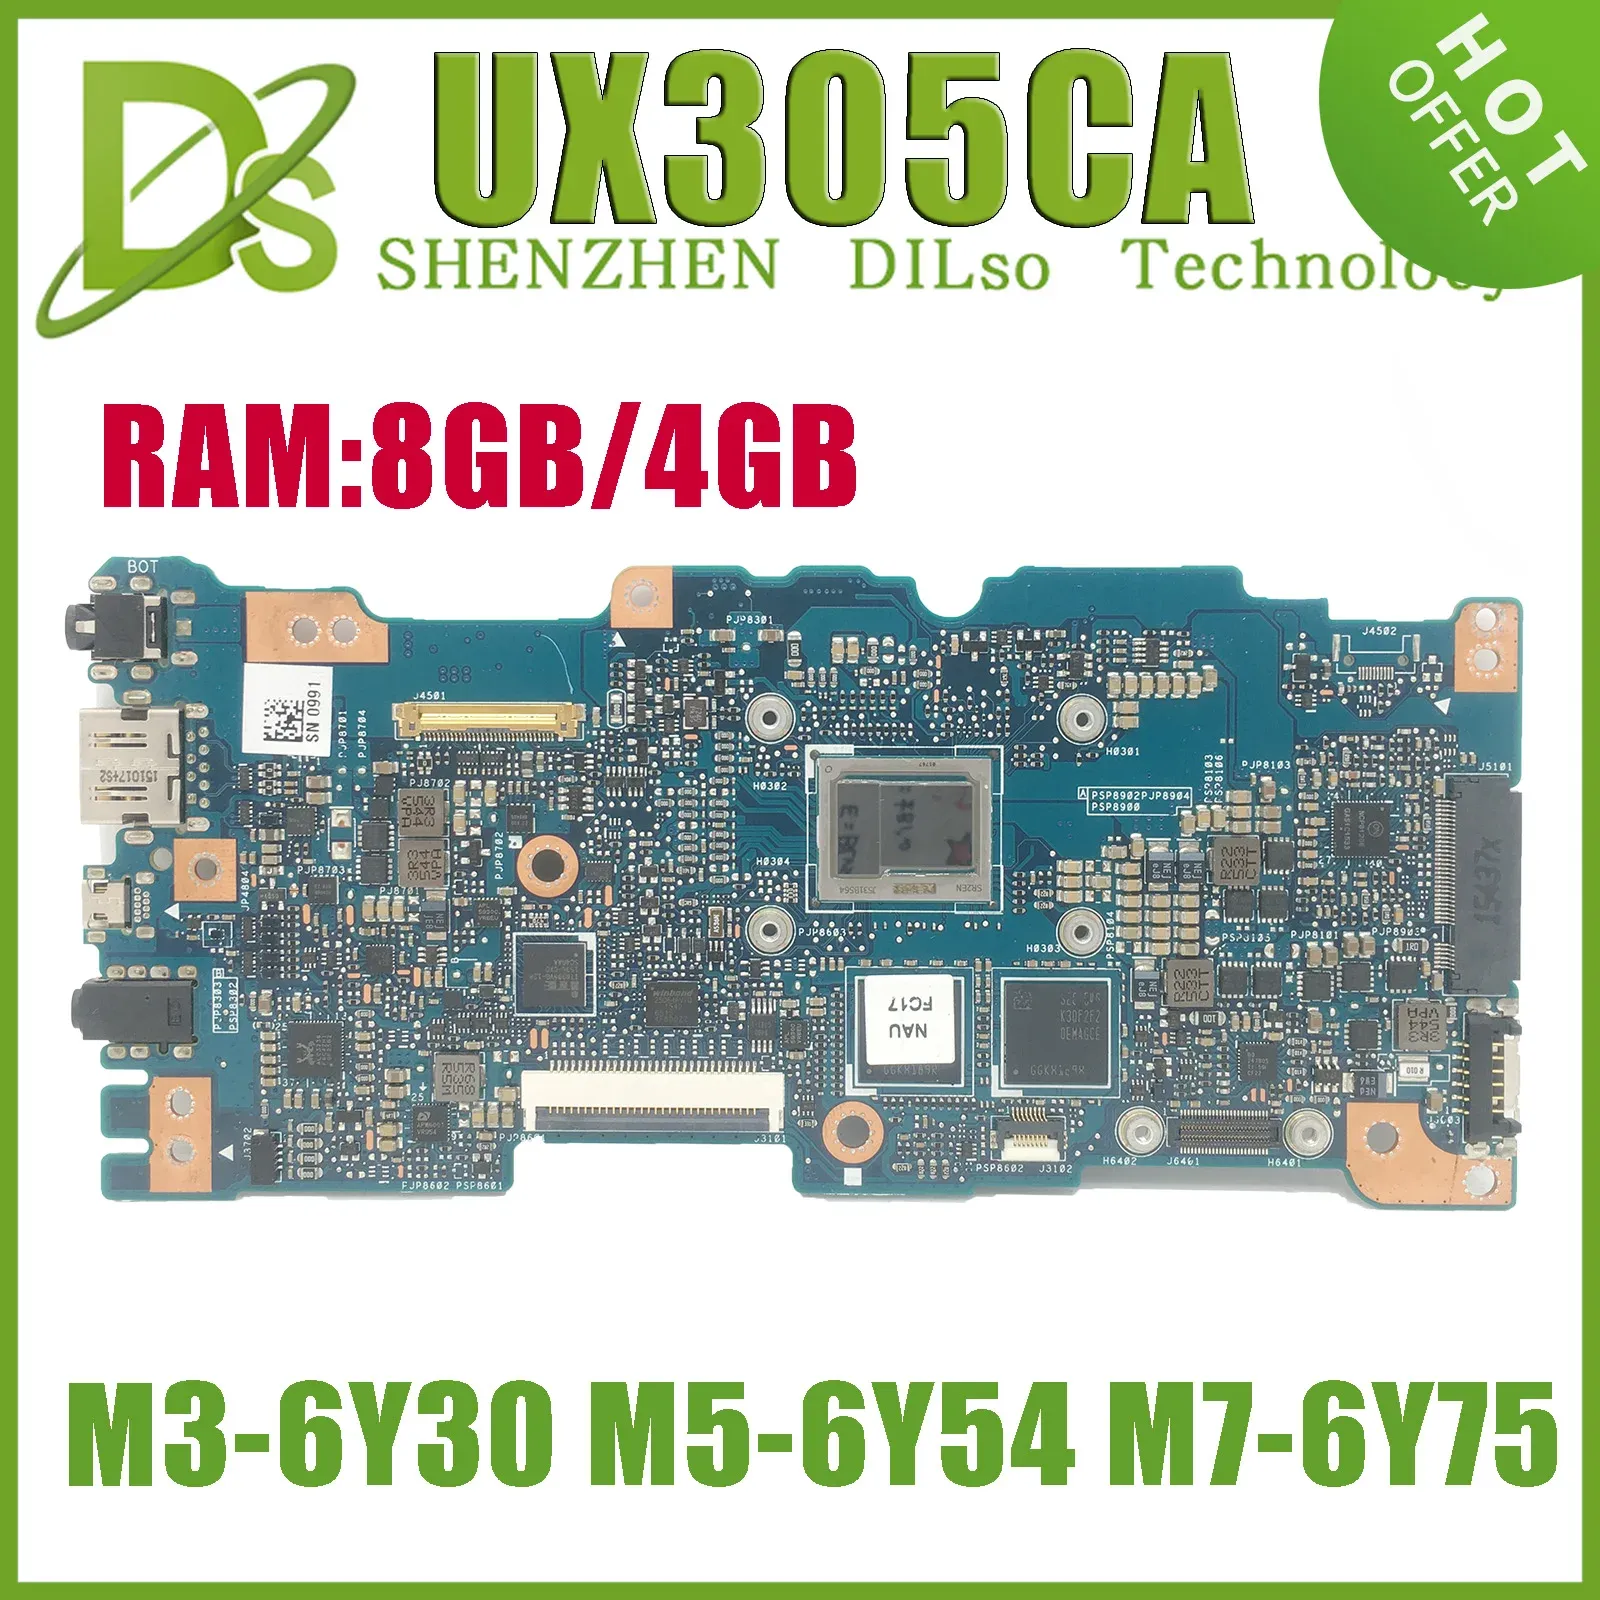 M36Y30 M5 CPU 4GB 8G RAM Mainboard REV 2.0用ASUS ZenBook U305C UX305 UX305Cラップトップマザーボード100％テスト済みのマザーボードKEFU UX305CA